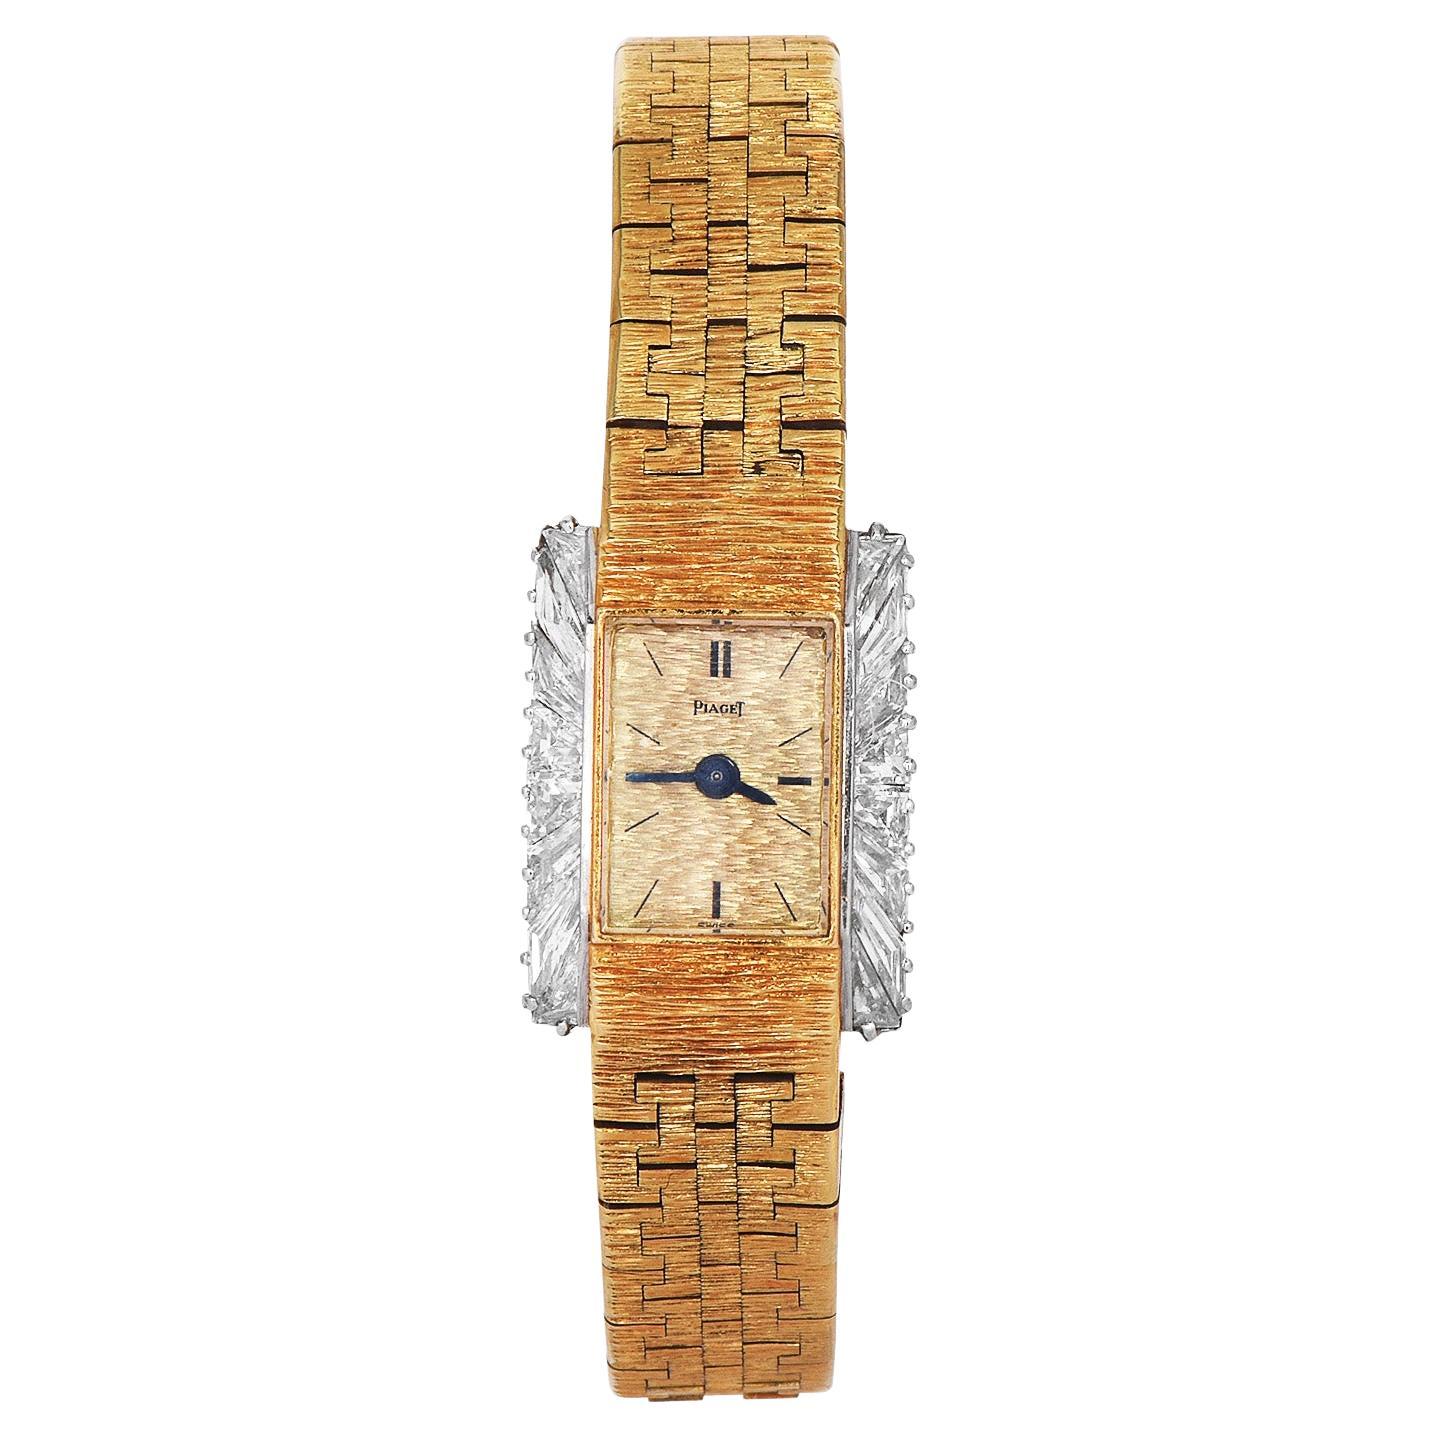 Vintage Piaget Diamond 18K Gelbgold Ballerina Damen Handgelenk Uhr